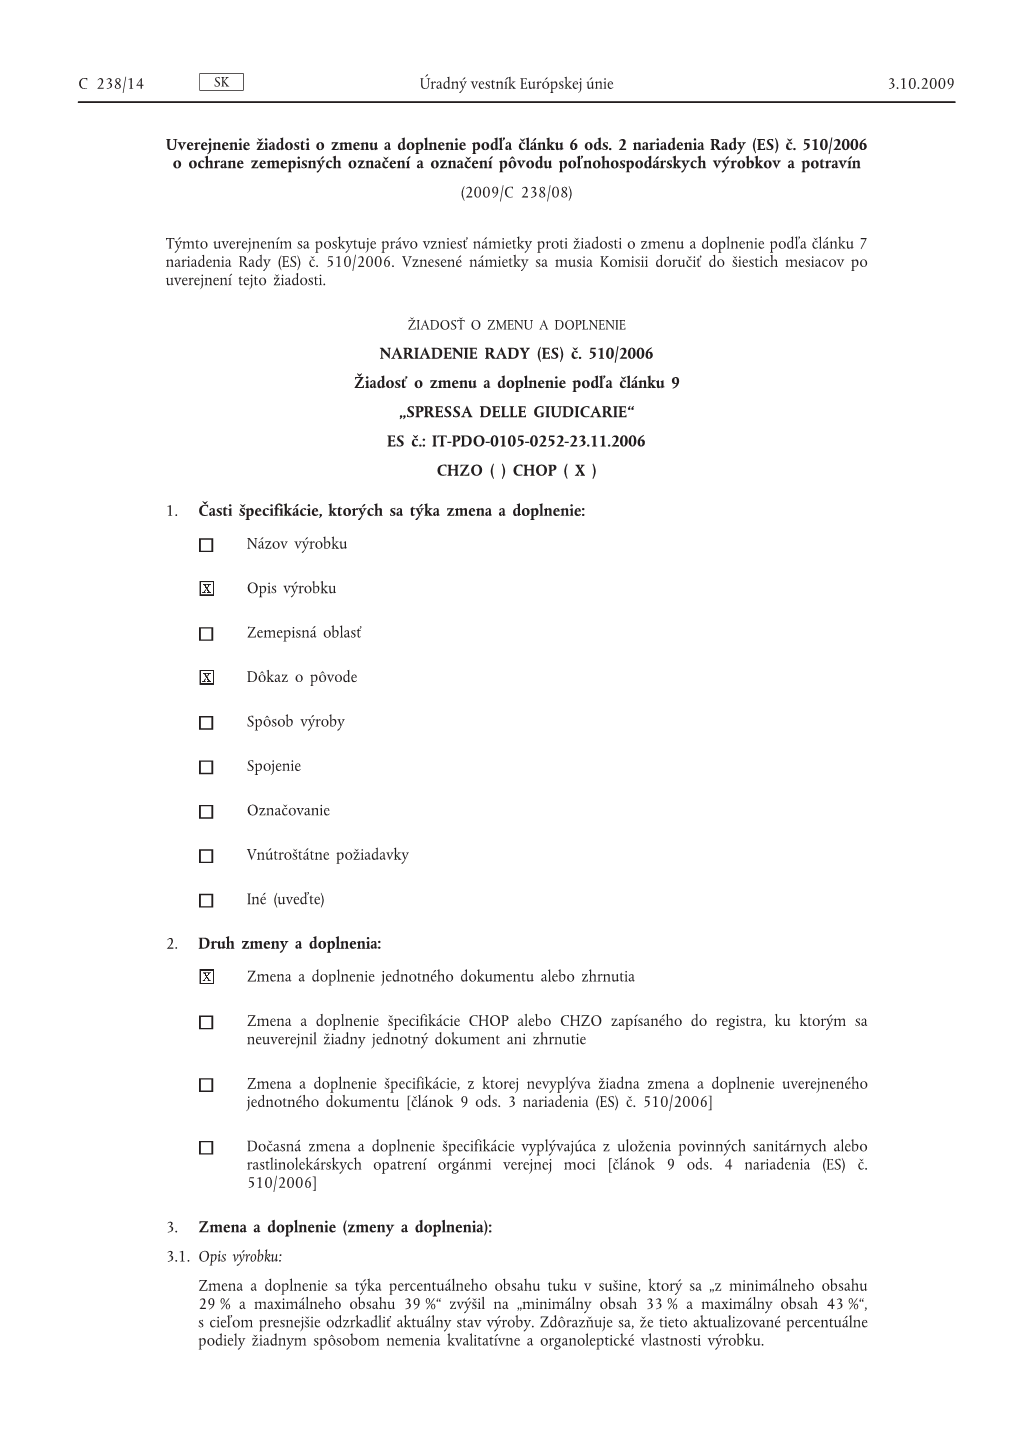 Č. 510/2006 O Ochrane Zemepisných Označení a Označení Pôvodu Poľnohospodárskych Výrobkov a Potravín (2009/C 238/08)